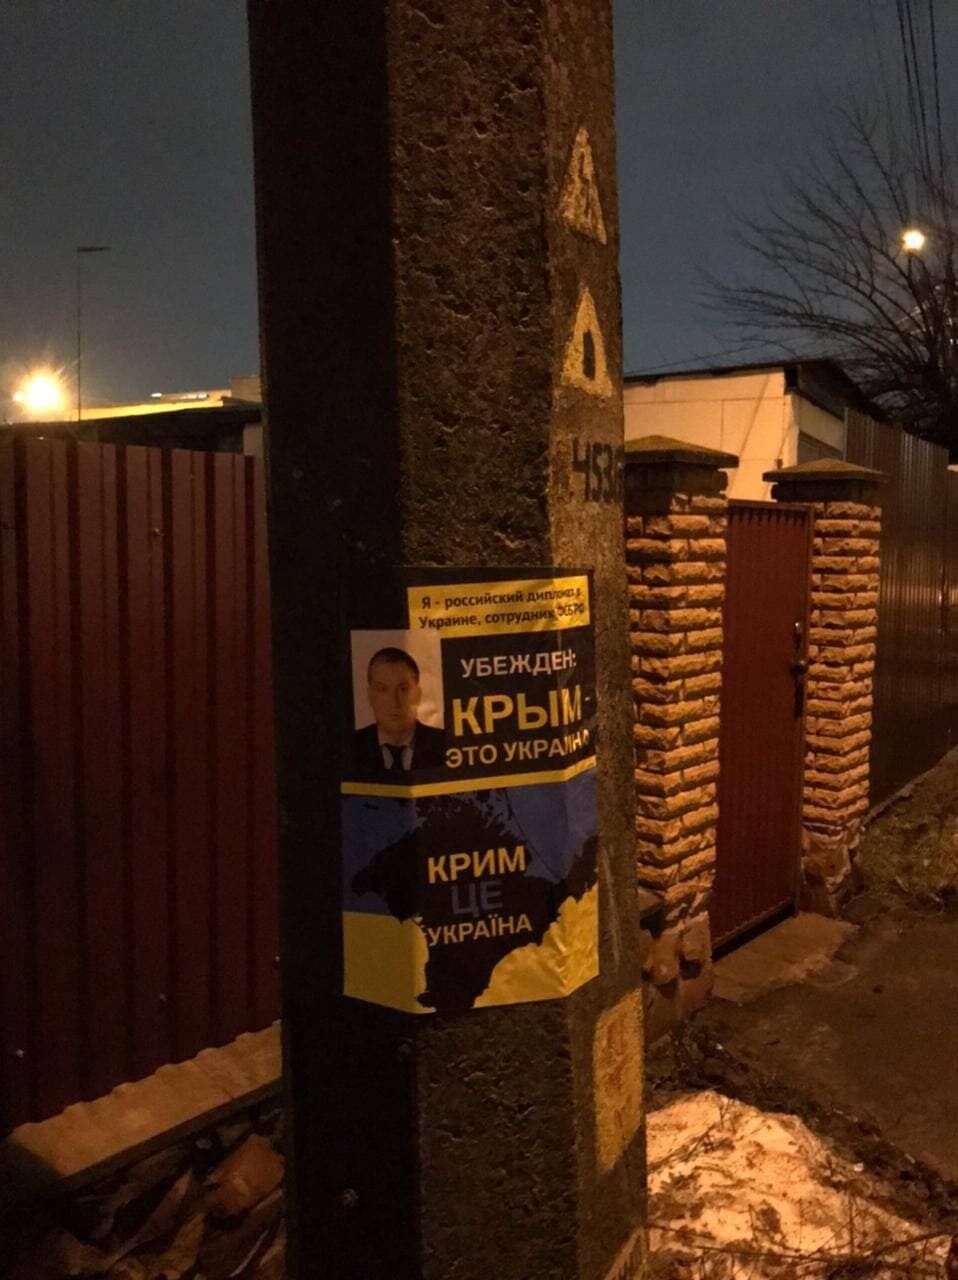 Возле места проживания российских дипломатов в Украине также появились плакаты о Крыме